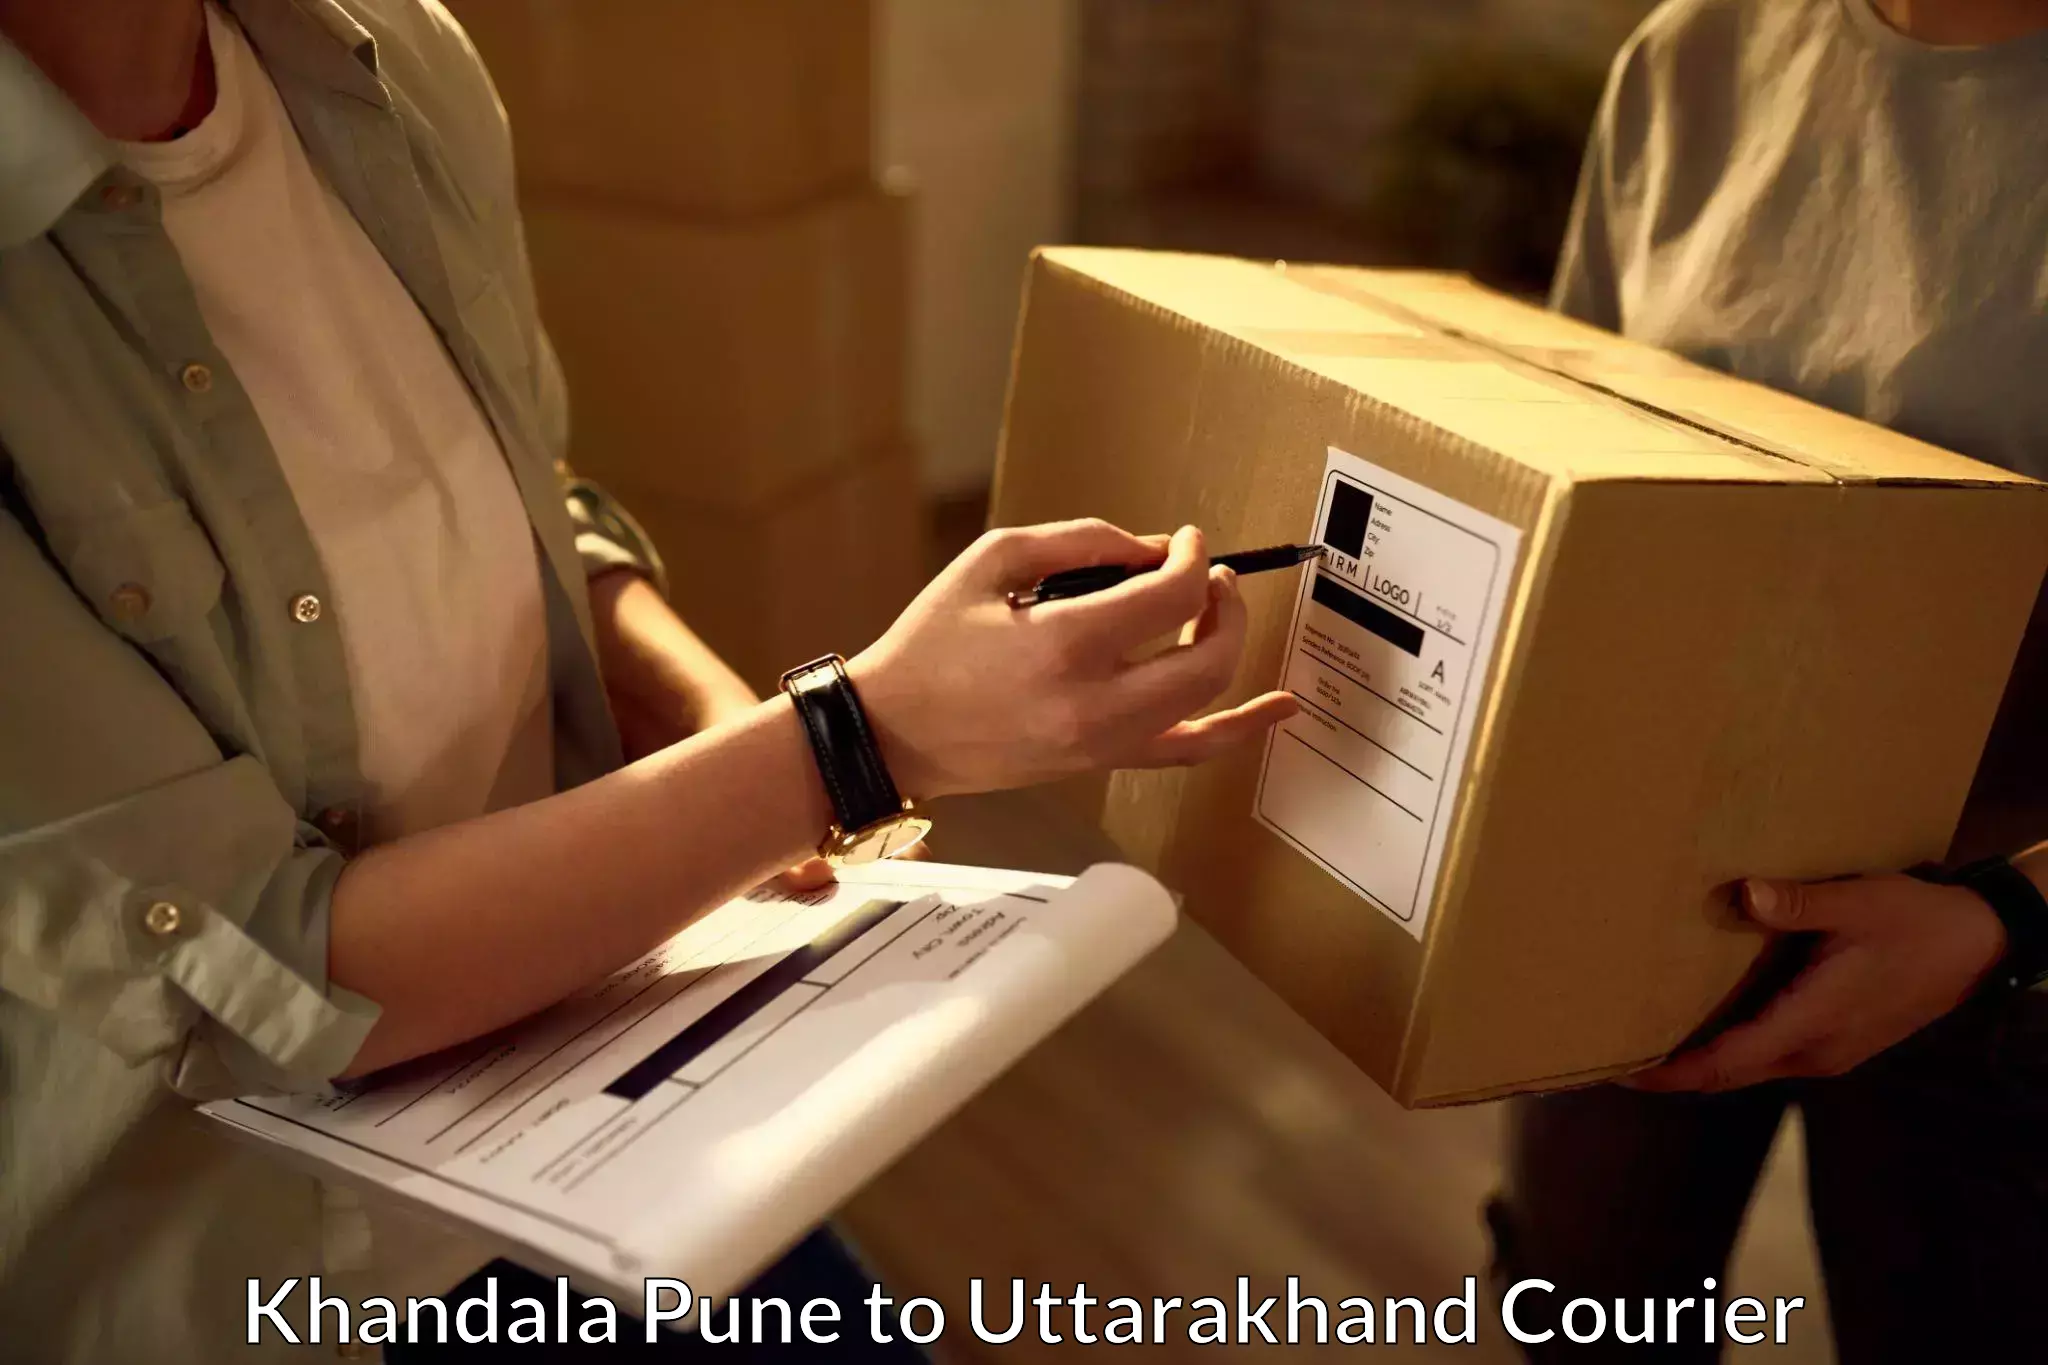 Efficient parcel service Khandala Pune to Tehri